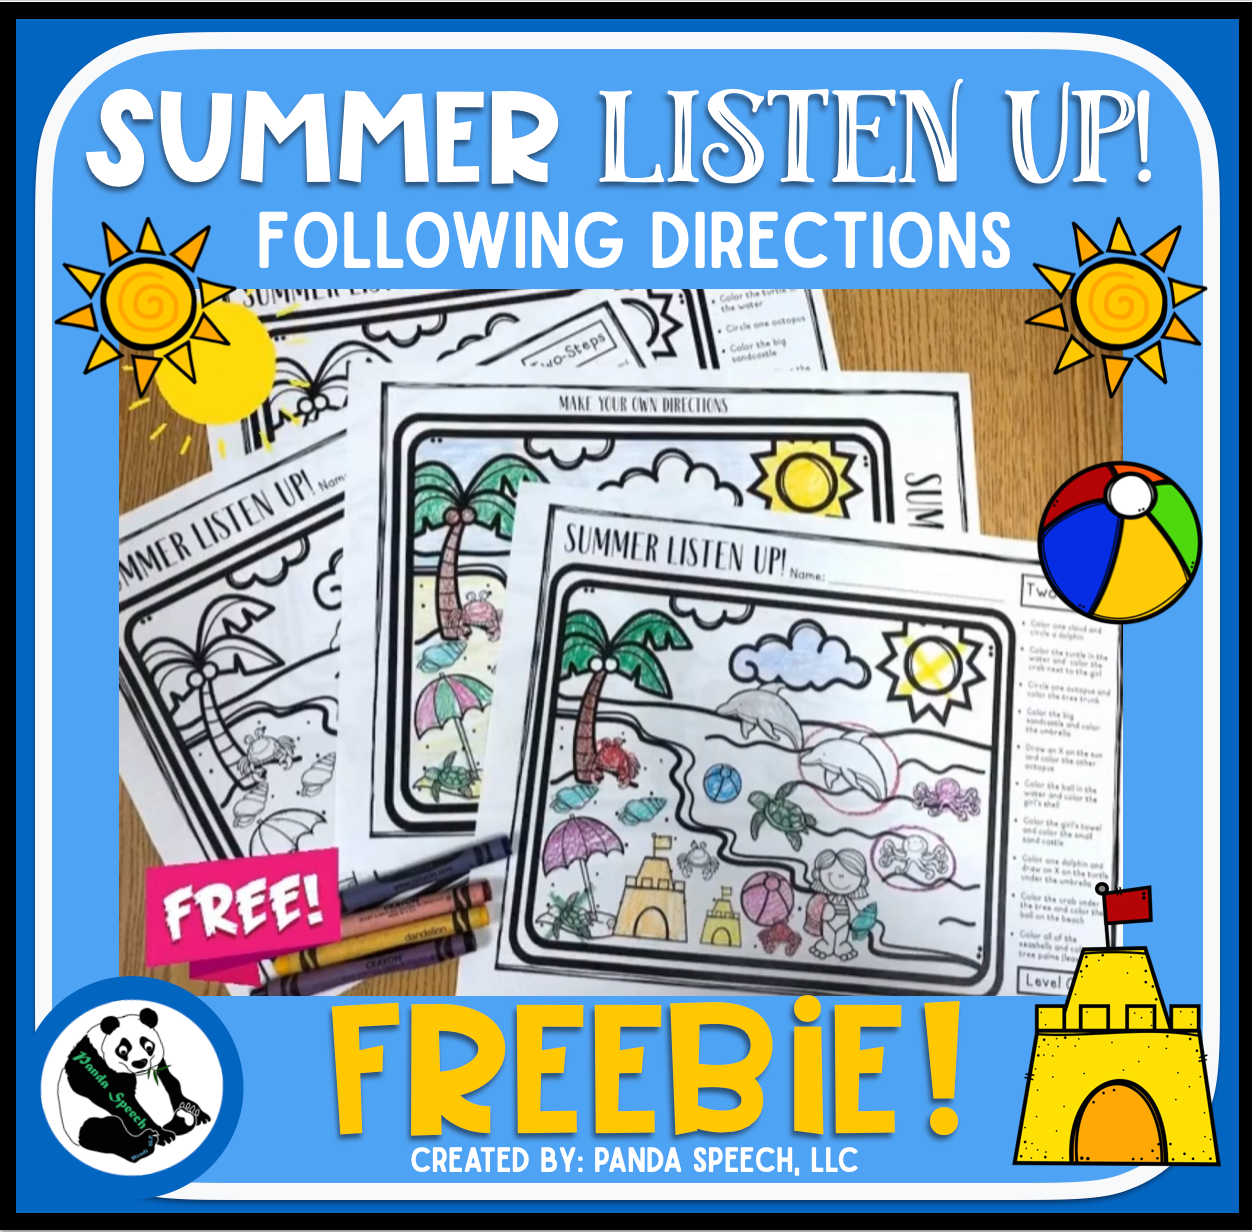 Summer Listen Up! Following Directions Freebie